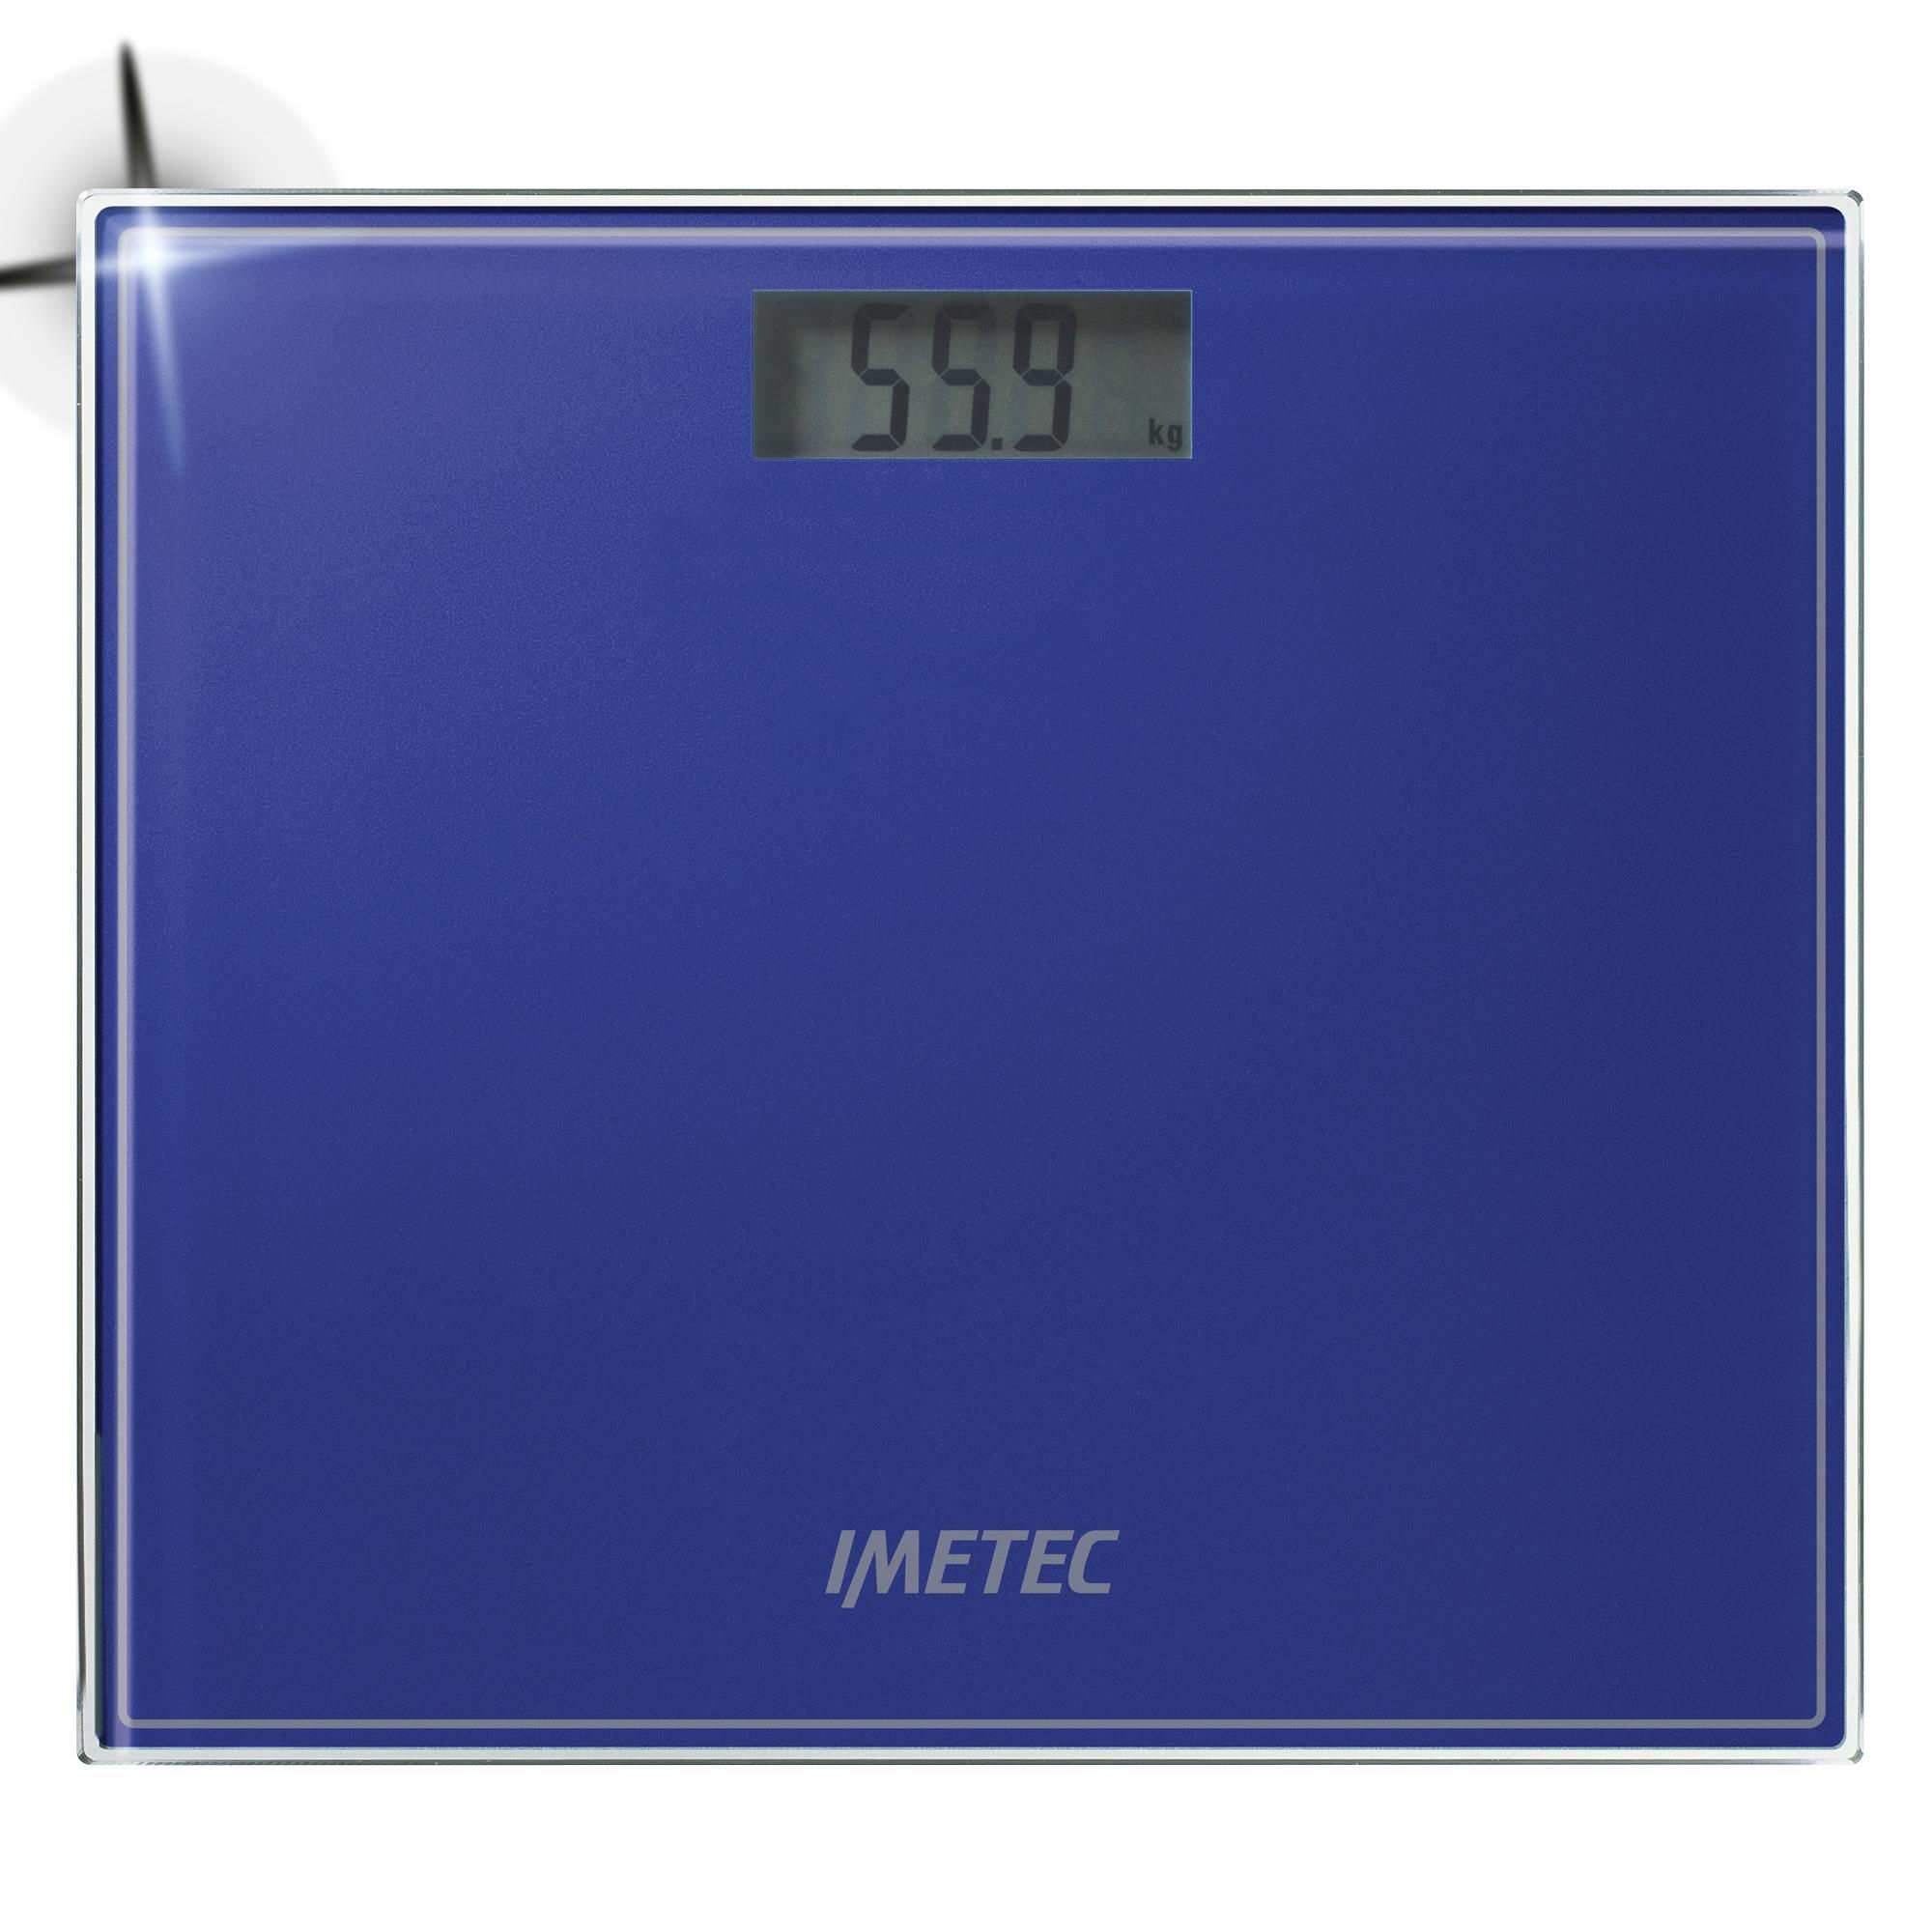 Imetec Compact ES1 100